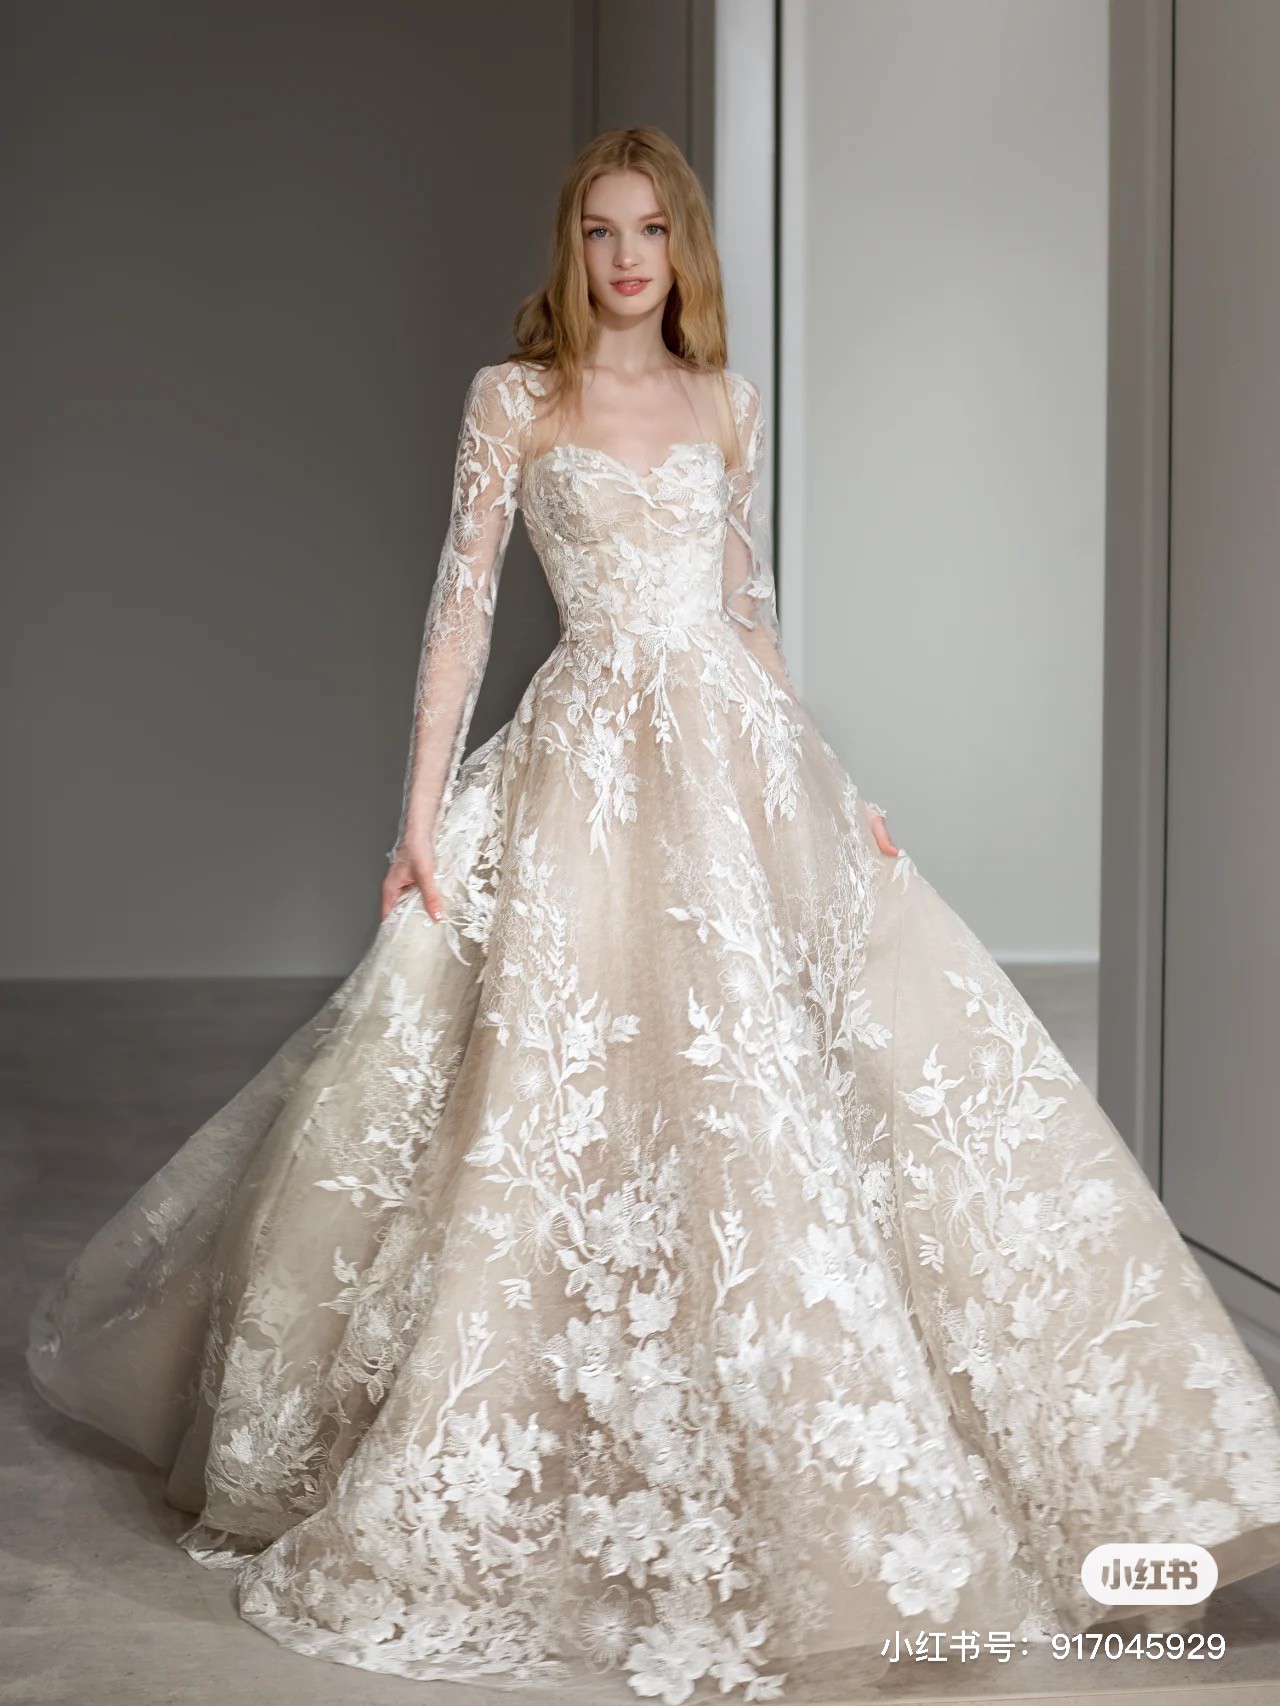 Monique Lhuillier Truely Wedding Dress Save 64% - Stillwhite